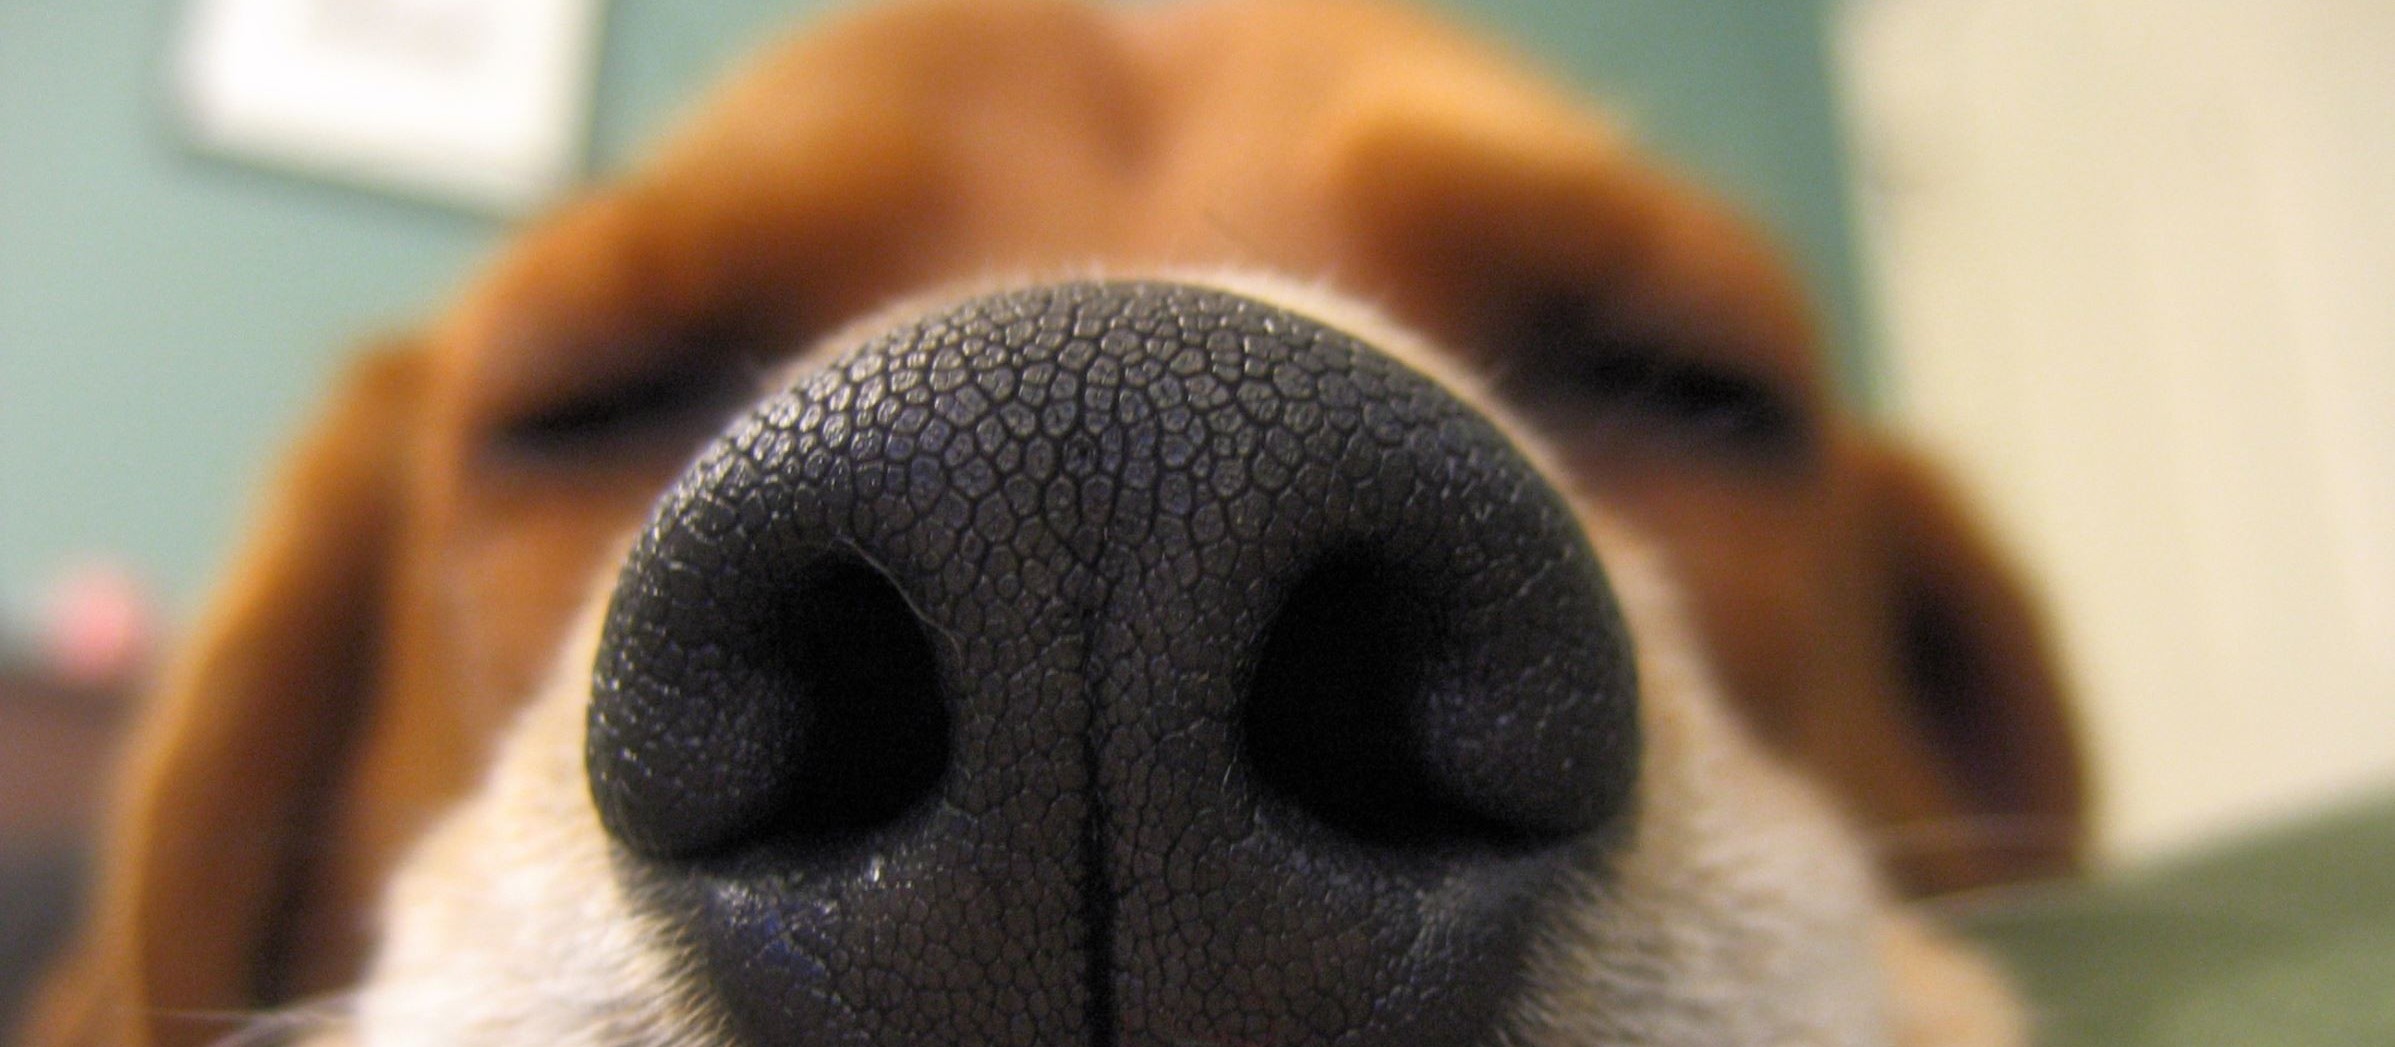 Cães podem detectar câncer em humanos, segundo estudos